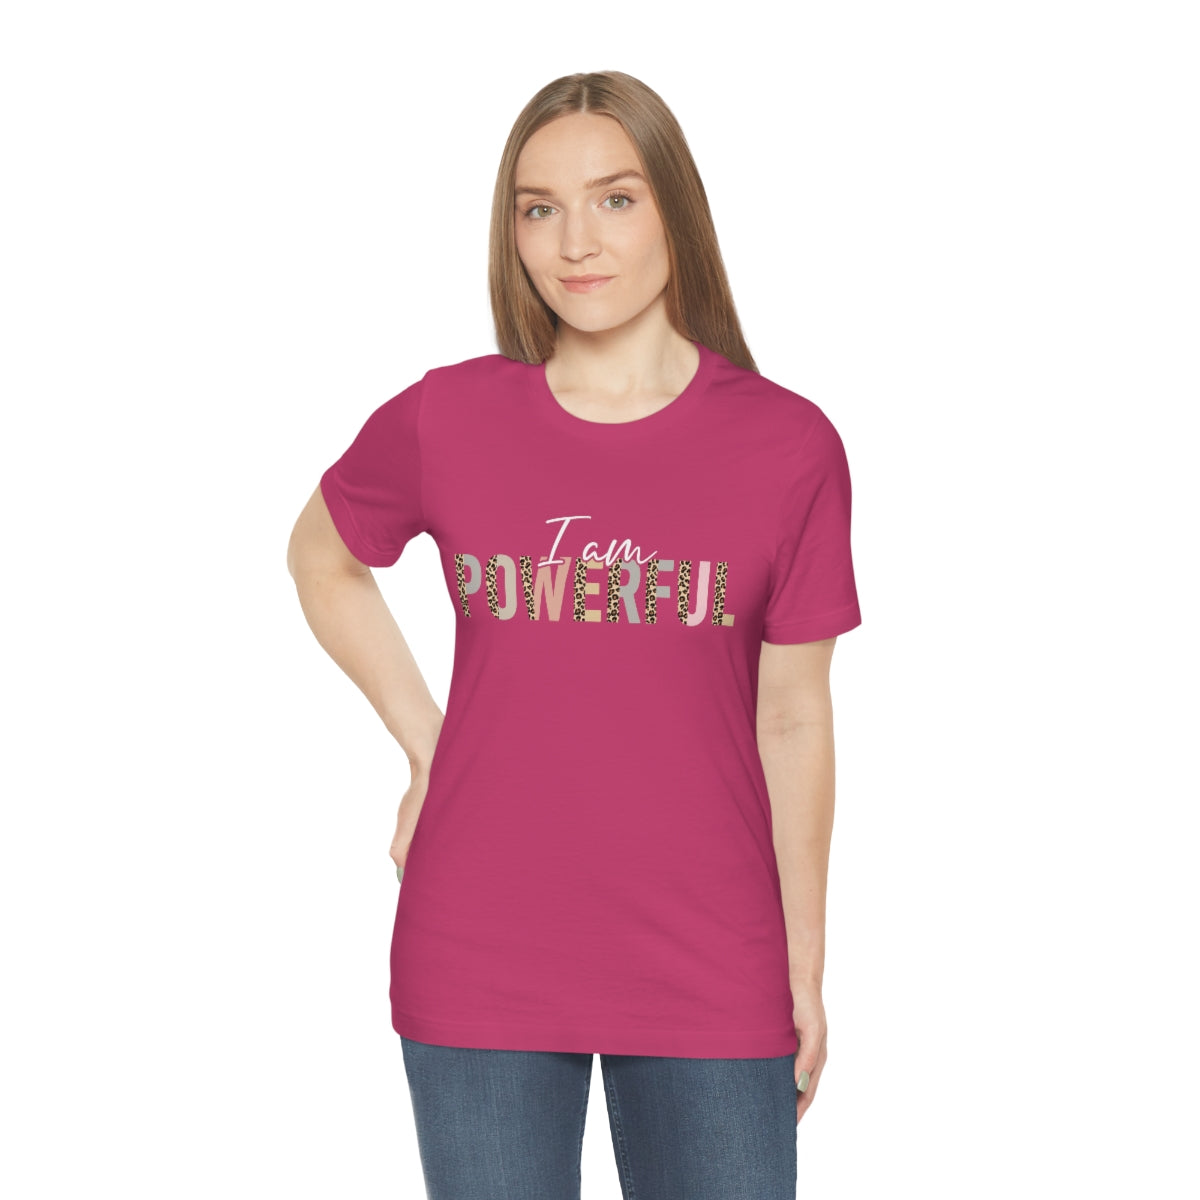 Affirmation Feminist Pro Choice T-Shirt Unisex Size - I am Powerful Printify